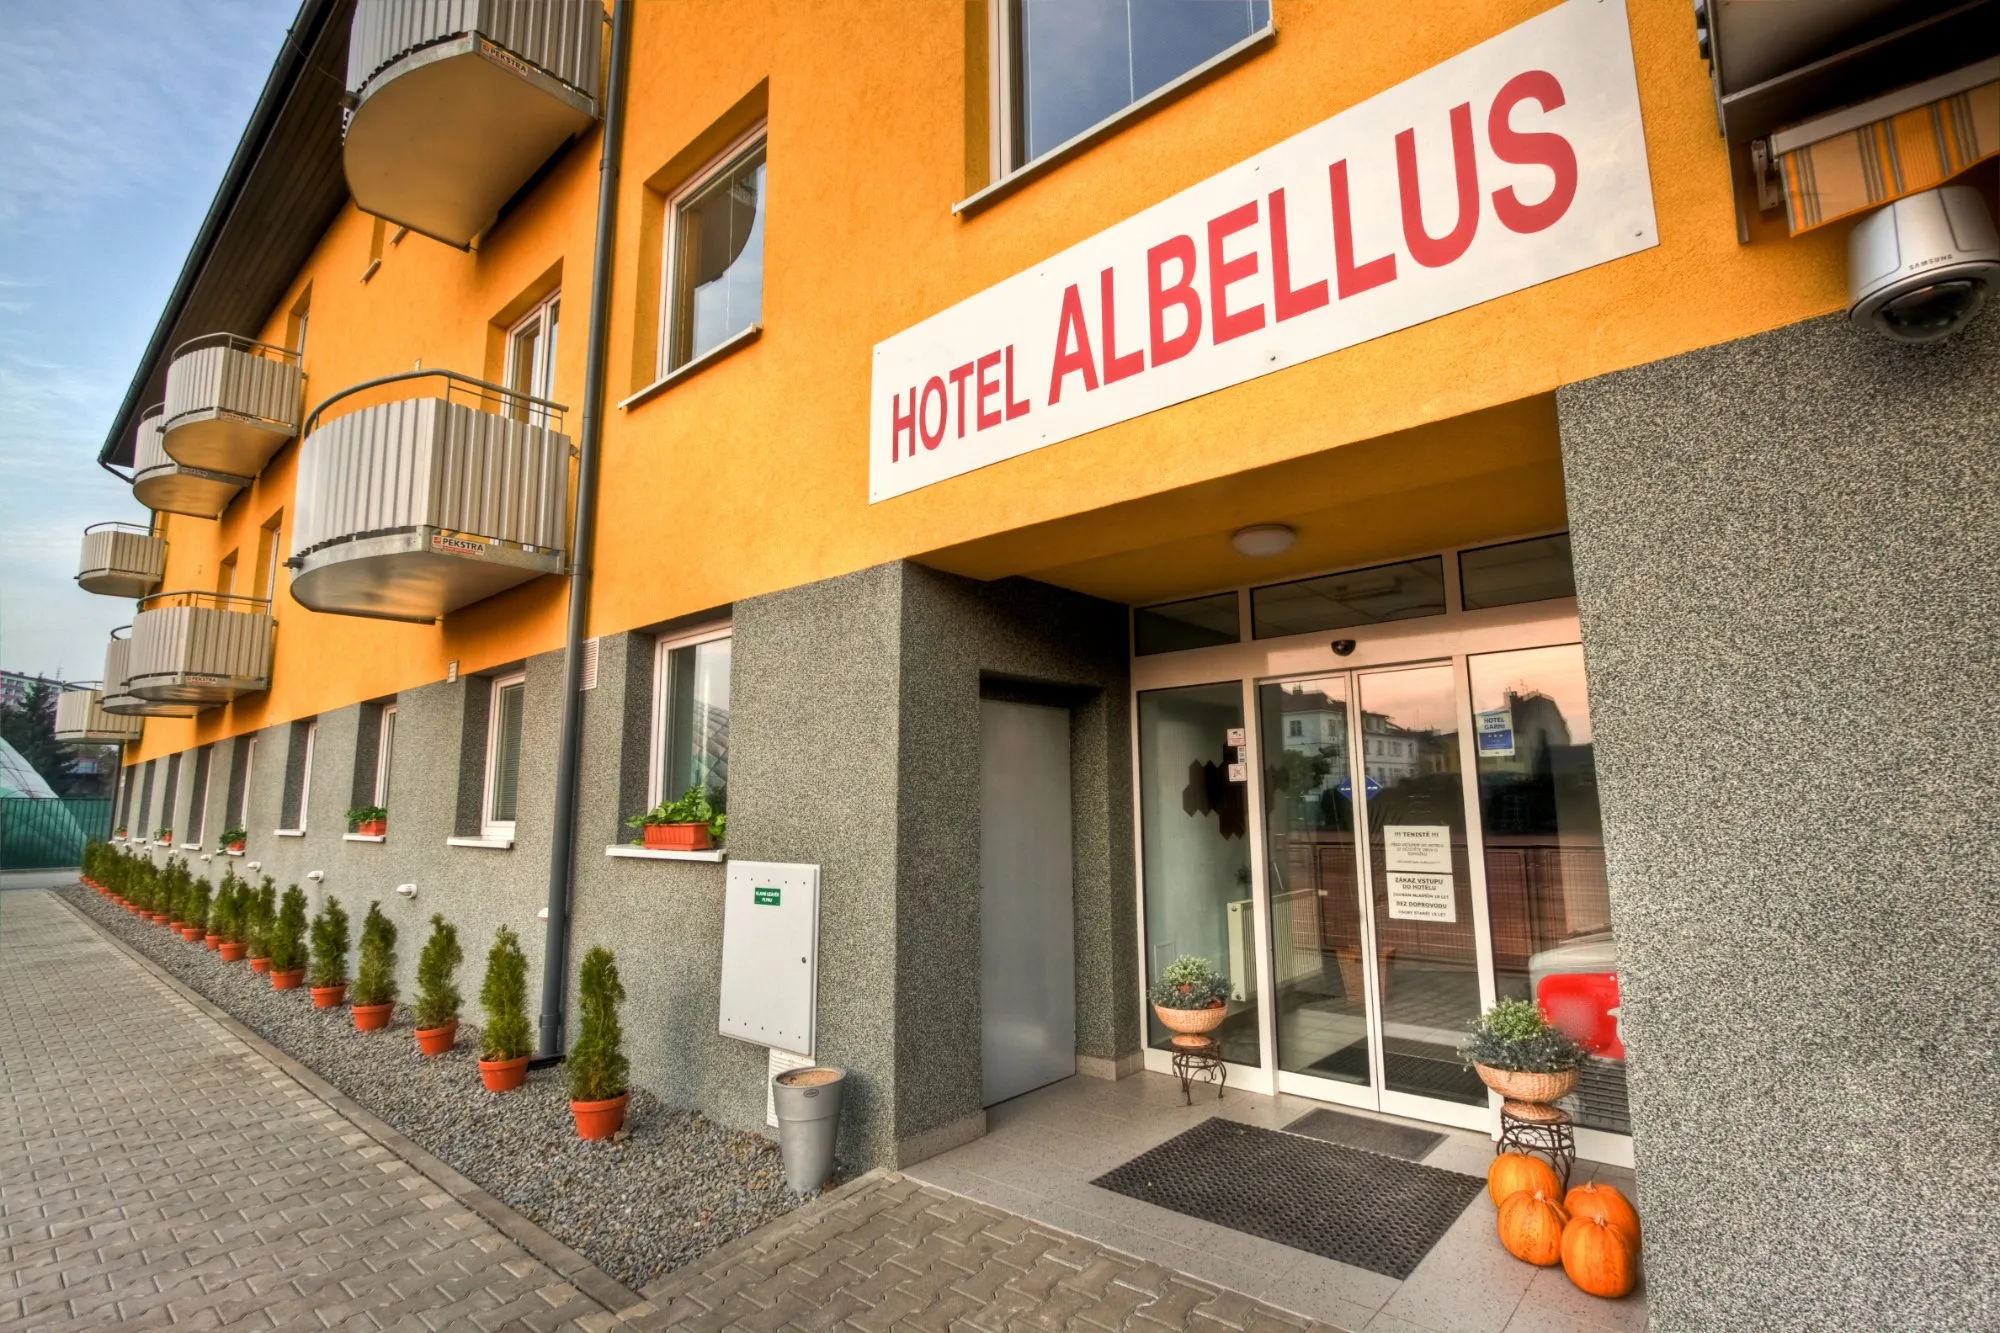 Building hotel Hotel Albellus